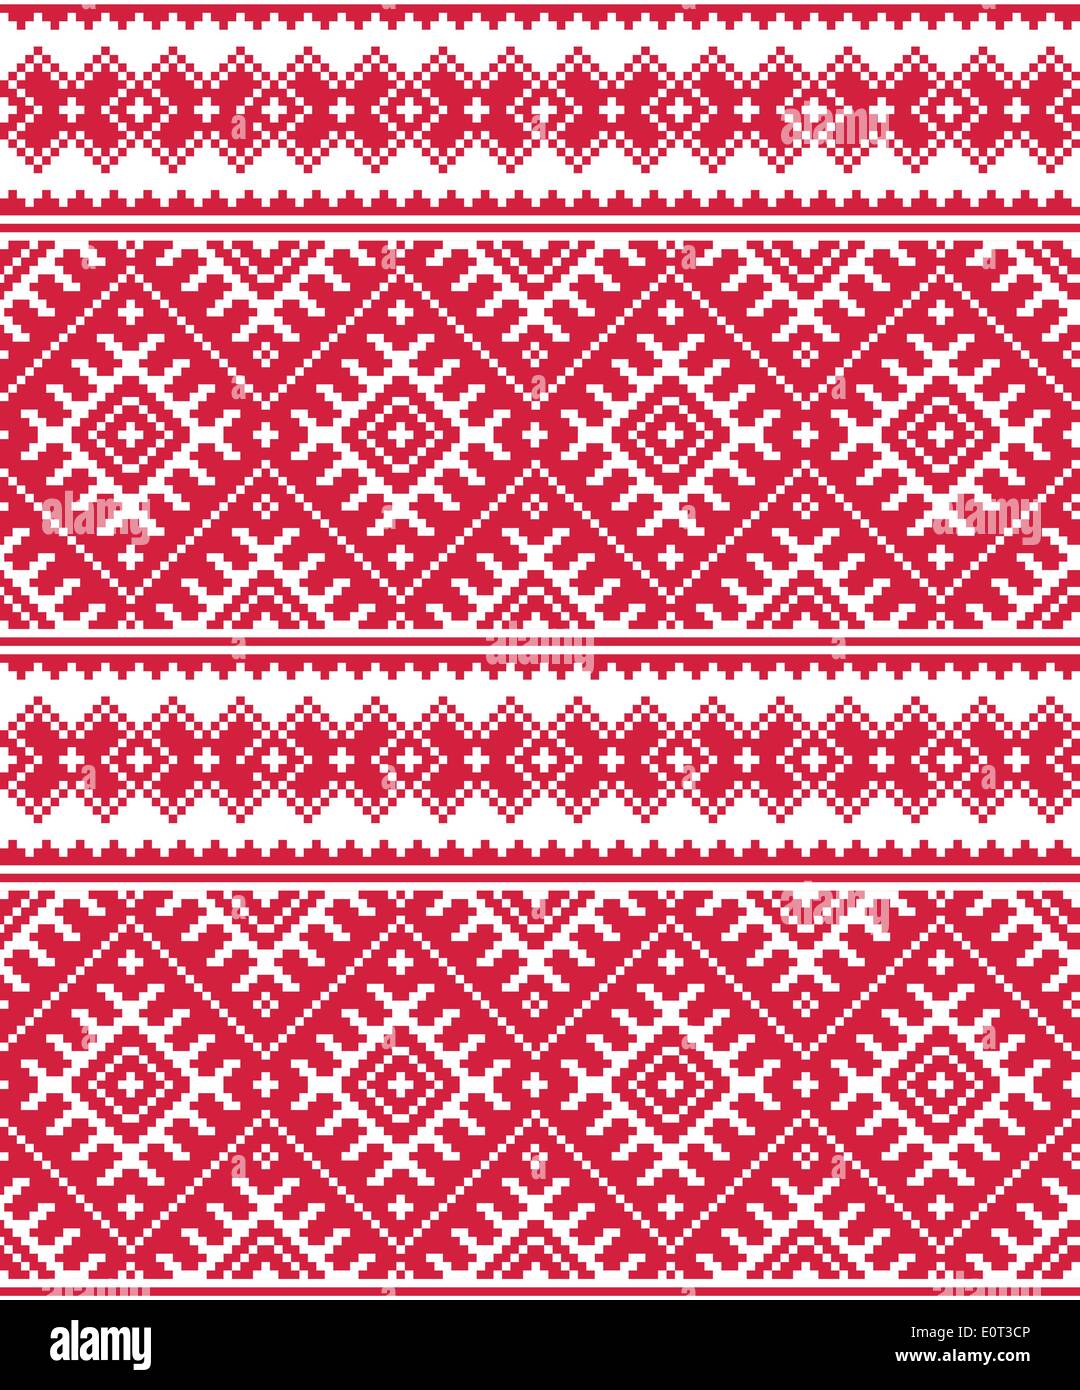 Ukrainian folk transparente rouge motif de broderie ou d'impression Illustration de Vecteur